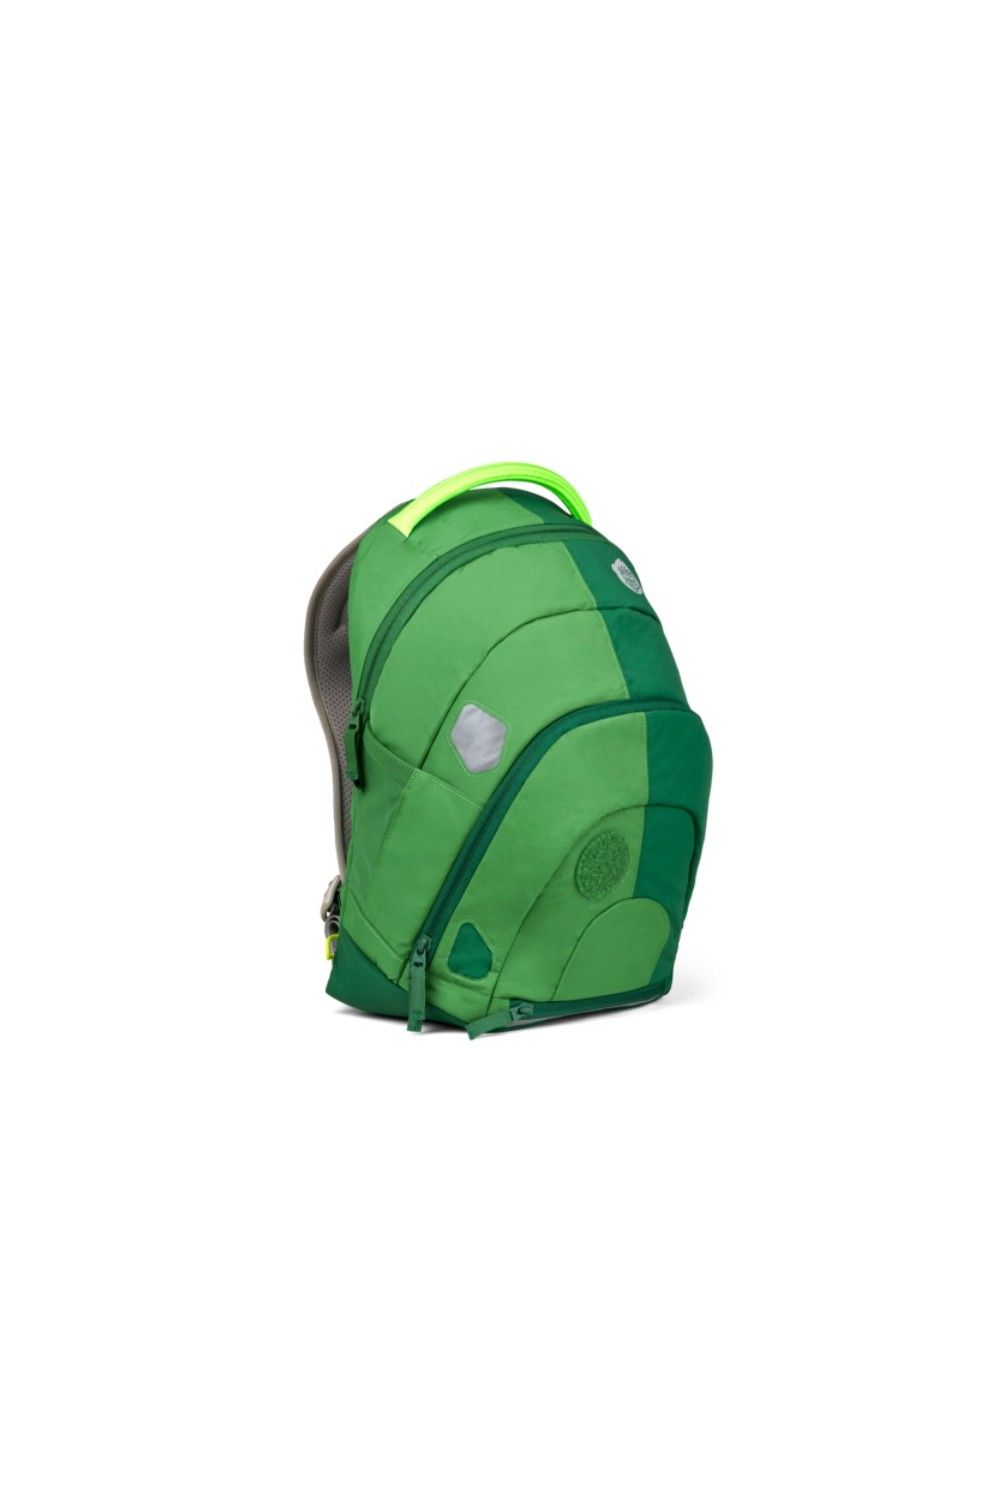 Affenzahn Daydreamer Ripstop Frosch adventure backpack